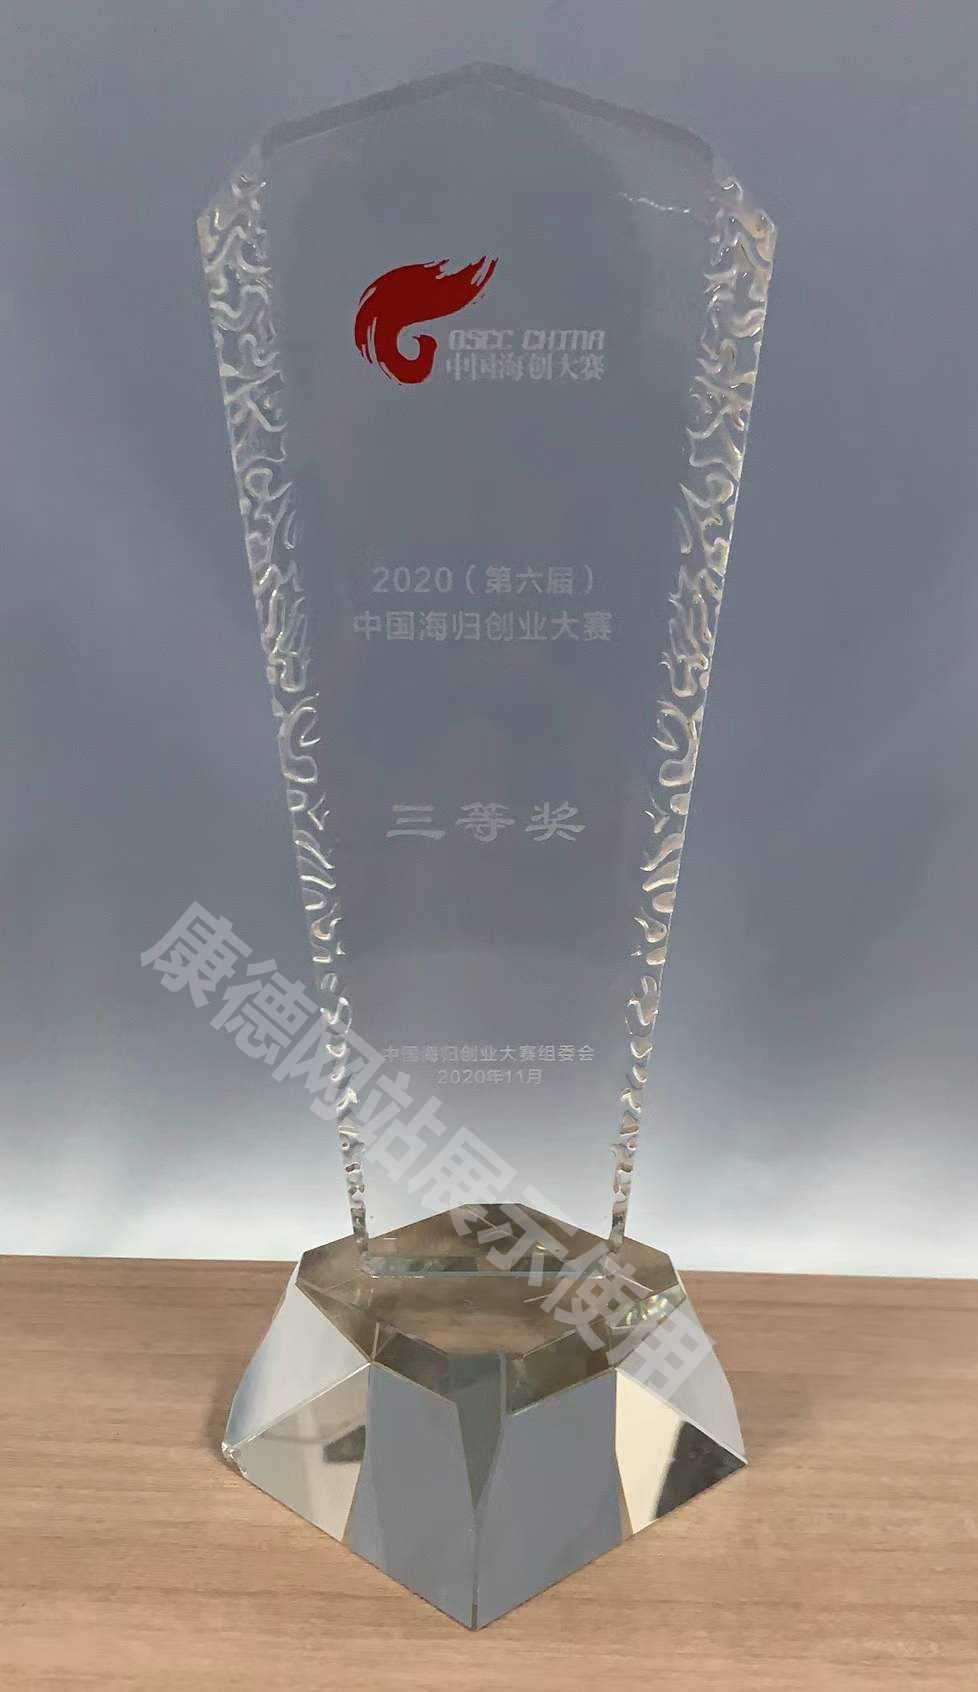 2020(第六届)中国海归创业大赛三等奖